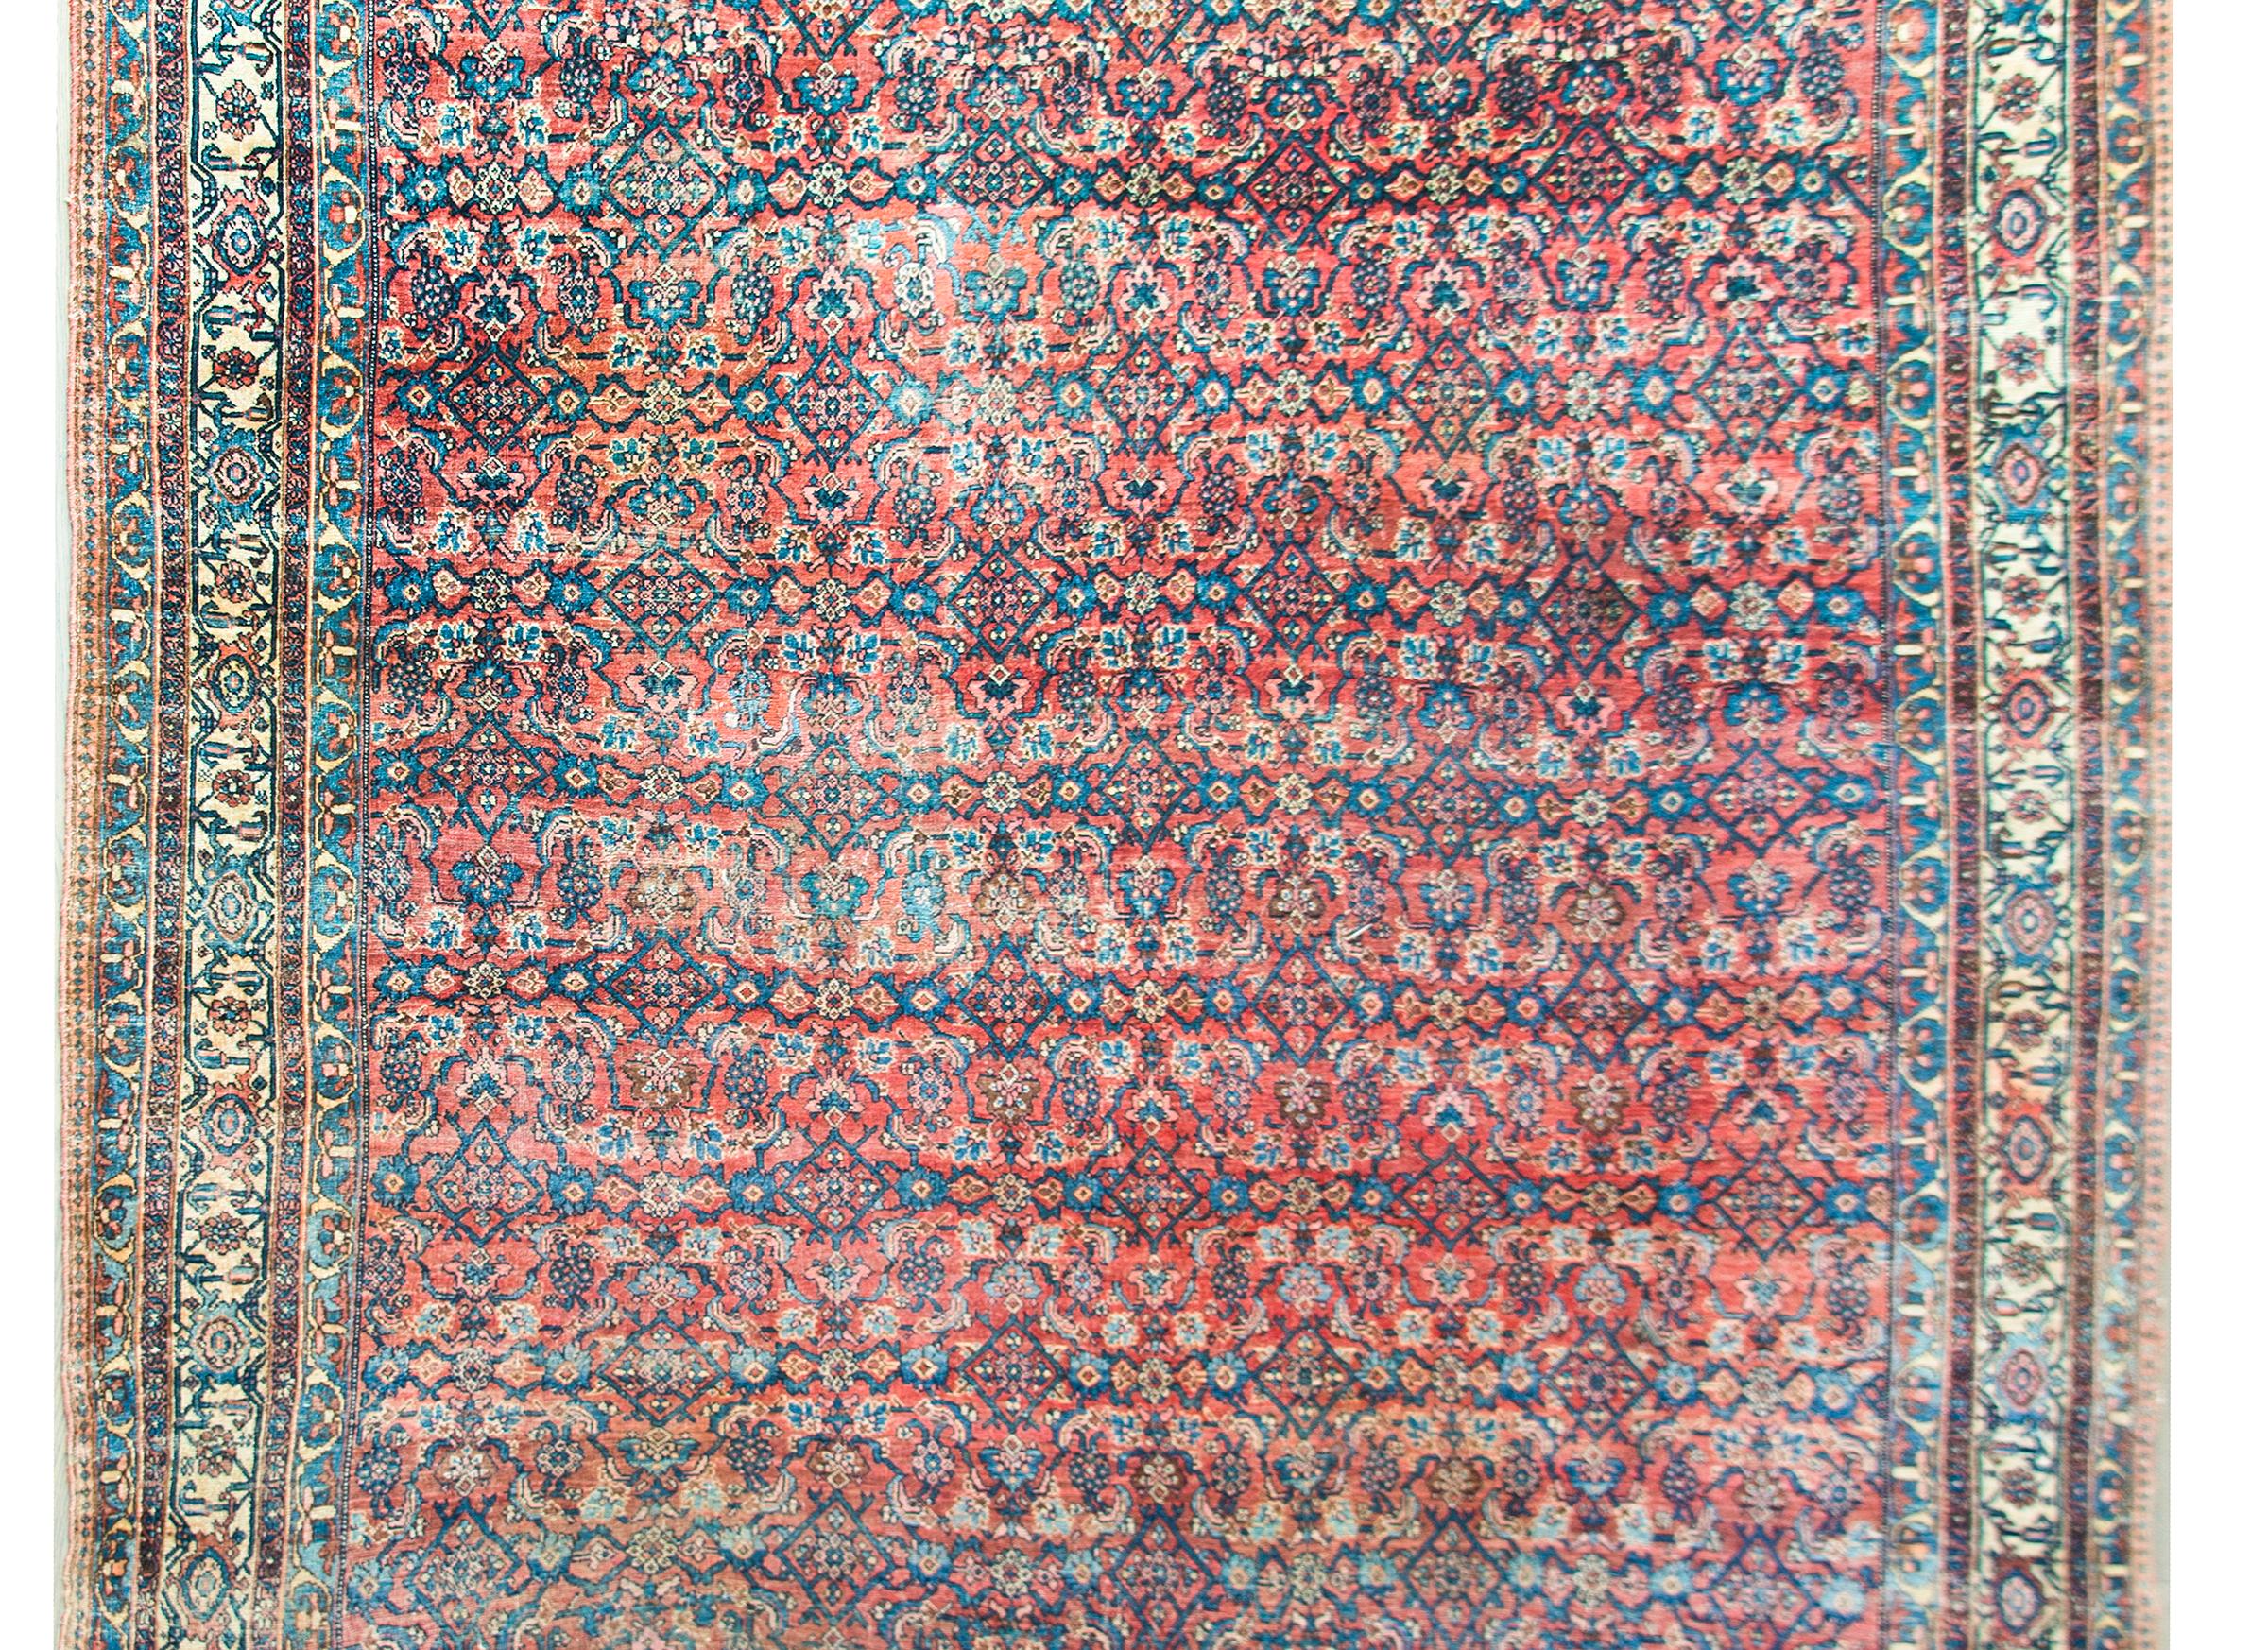 Ein unglaublicher persischer Bidder-Teppich aus dem späten 19. Jahrhundert mit dem schönsten Allover-Gitter- und Blumenmuster, umgeben von einer komplexen Bordüre, die mehrere dünne, passende, floral gemusterte Streifen enthält, die alle in hellem